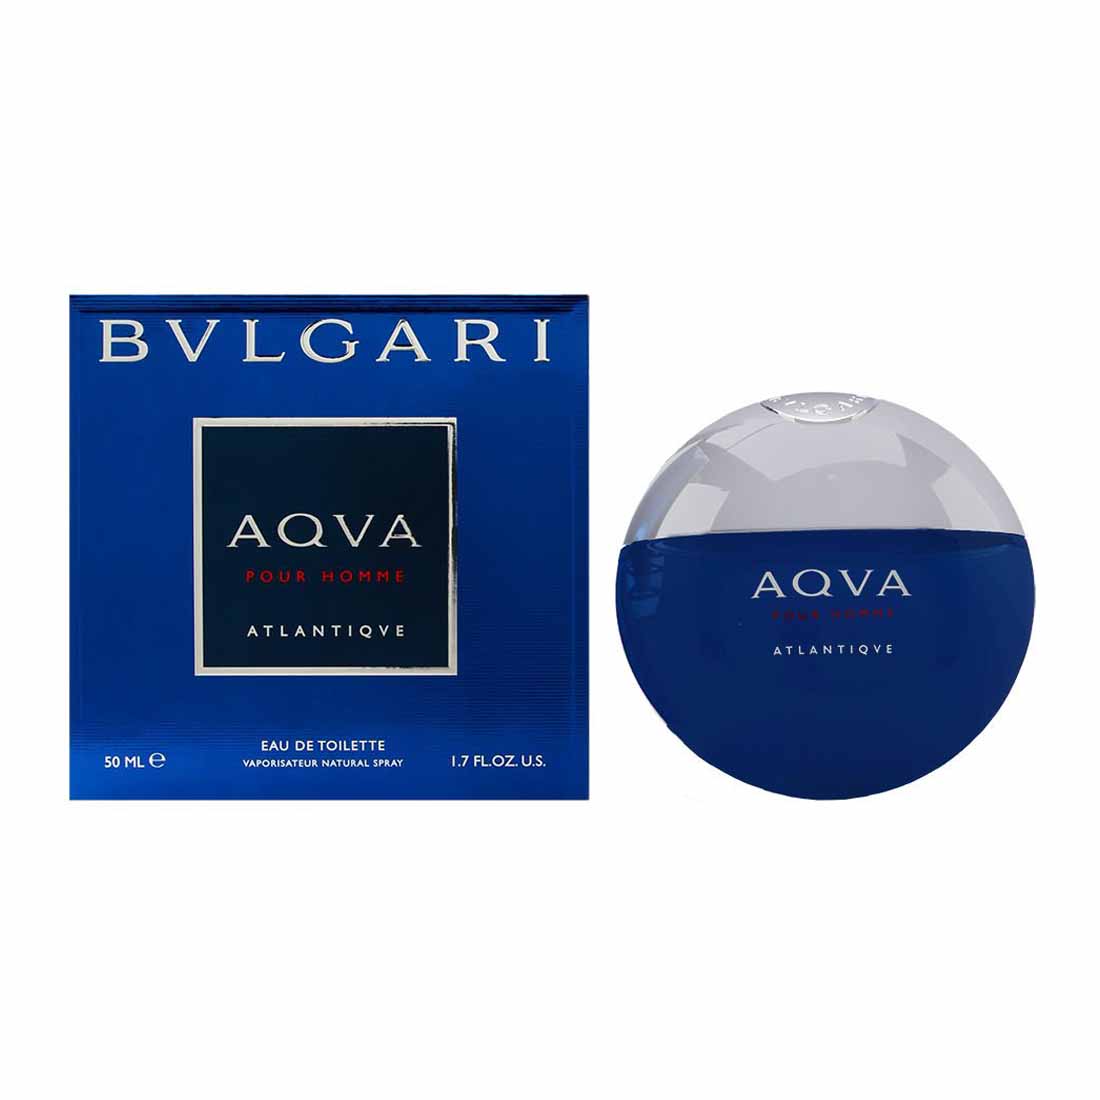 Bvlgari Aqua Atlantique Miniature Perfume - 5ml